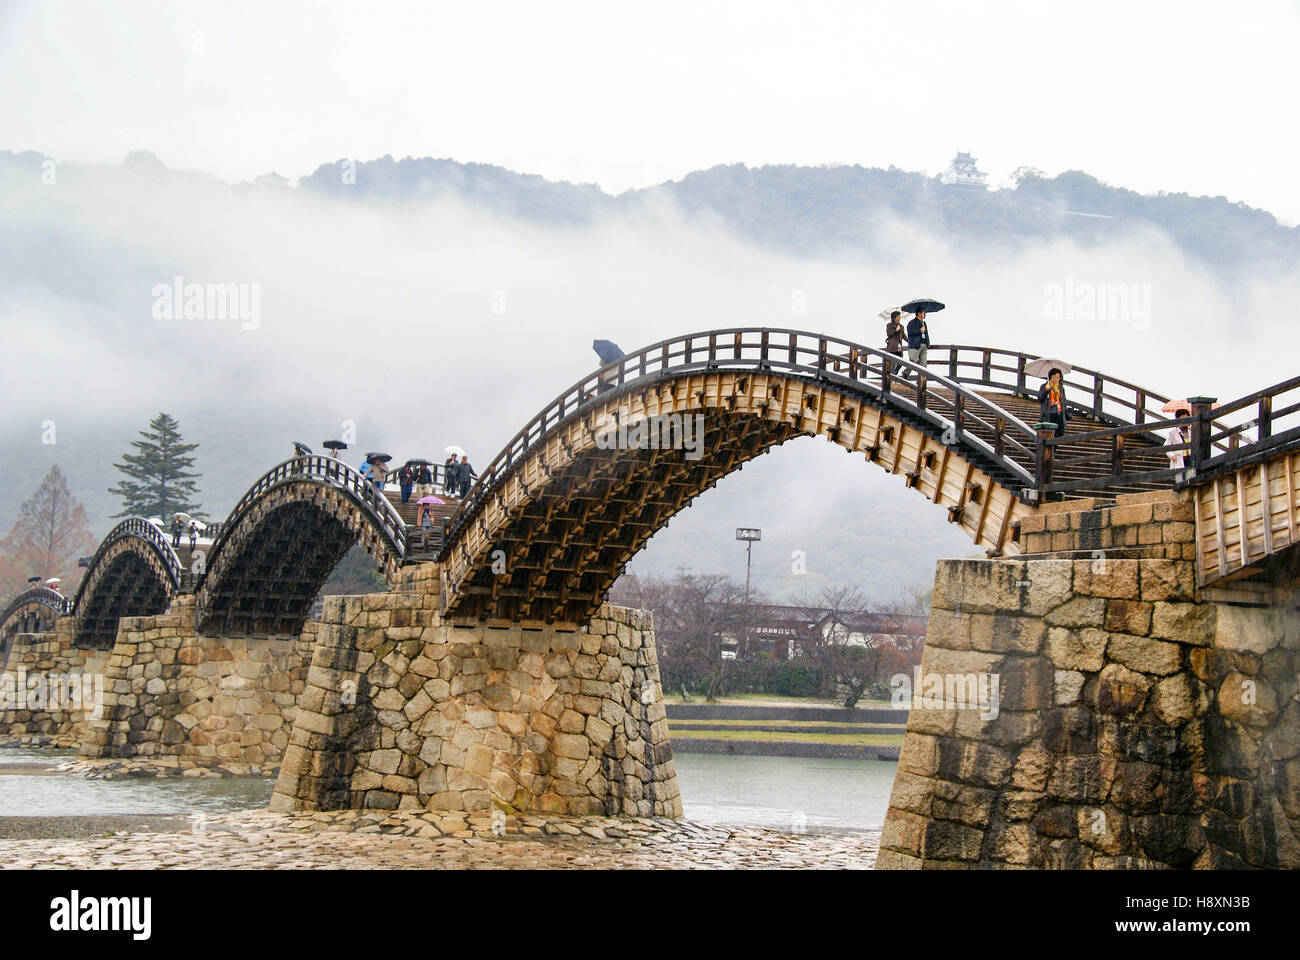 Dieses schöne traditionelle Bogenbrücke in Japan ist die Kintai-Brücke oder Kintai Stockfoto